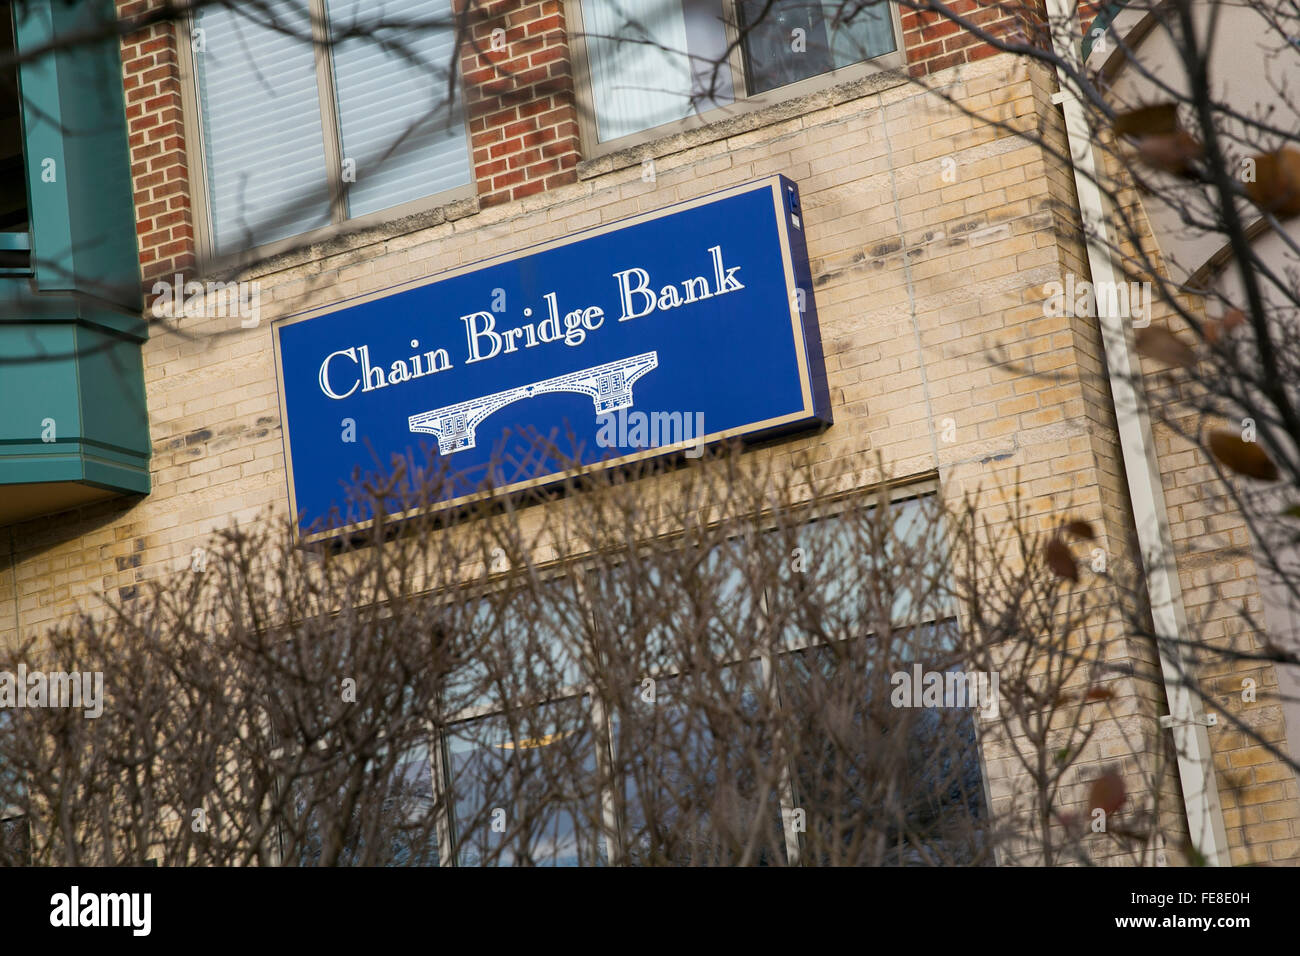 Un logotipo firmar fuera de la cadena de banco puente en McLean, Virginia, el 1 de enero de 2016. El banco tiene una sola rama y es tan Foto de stock